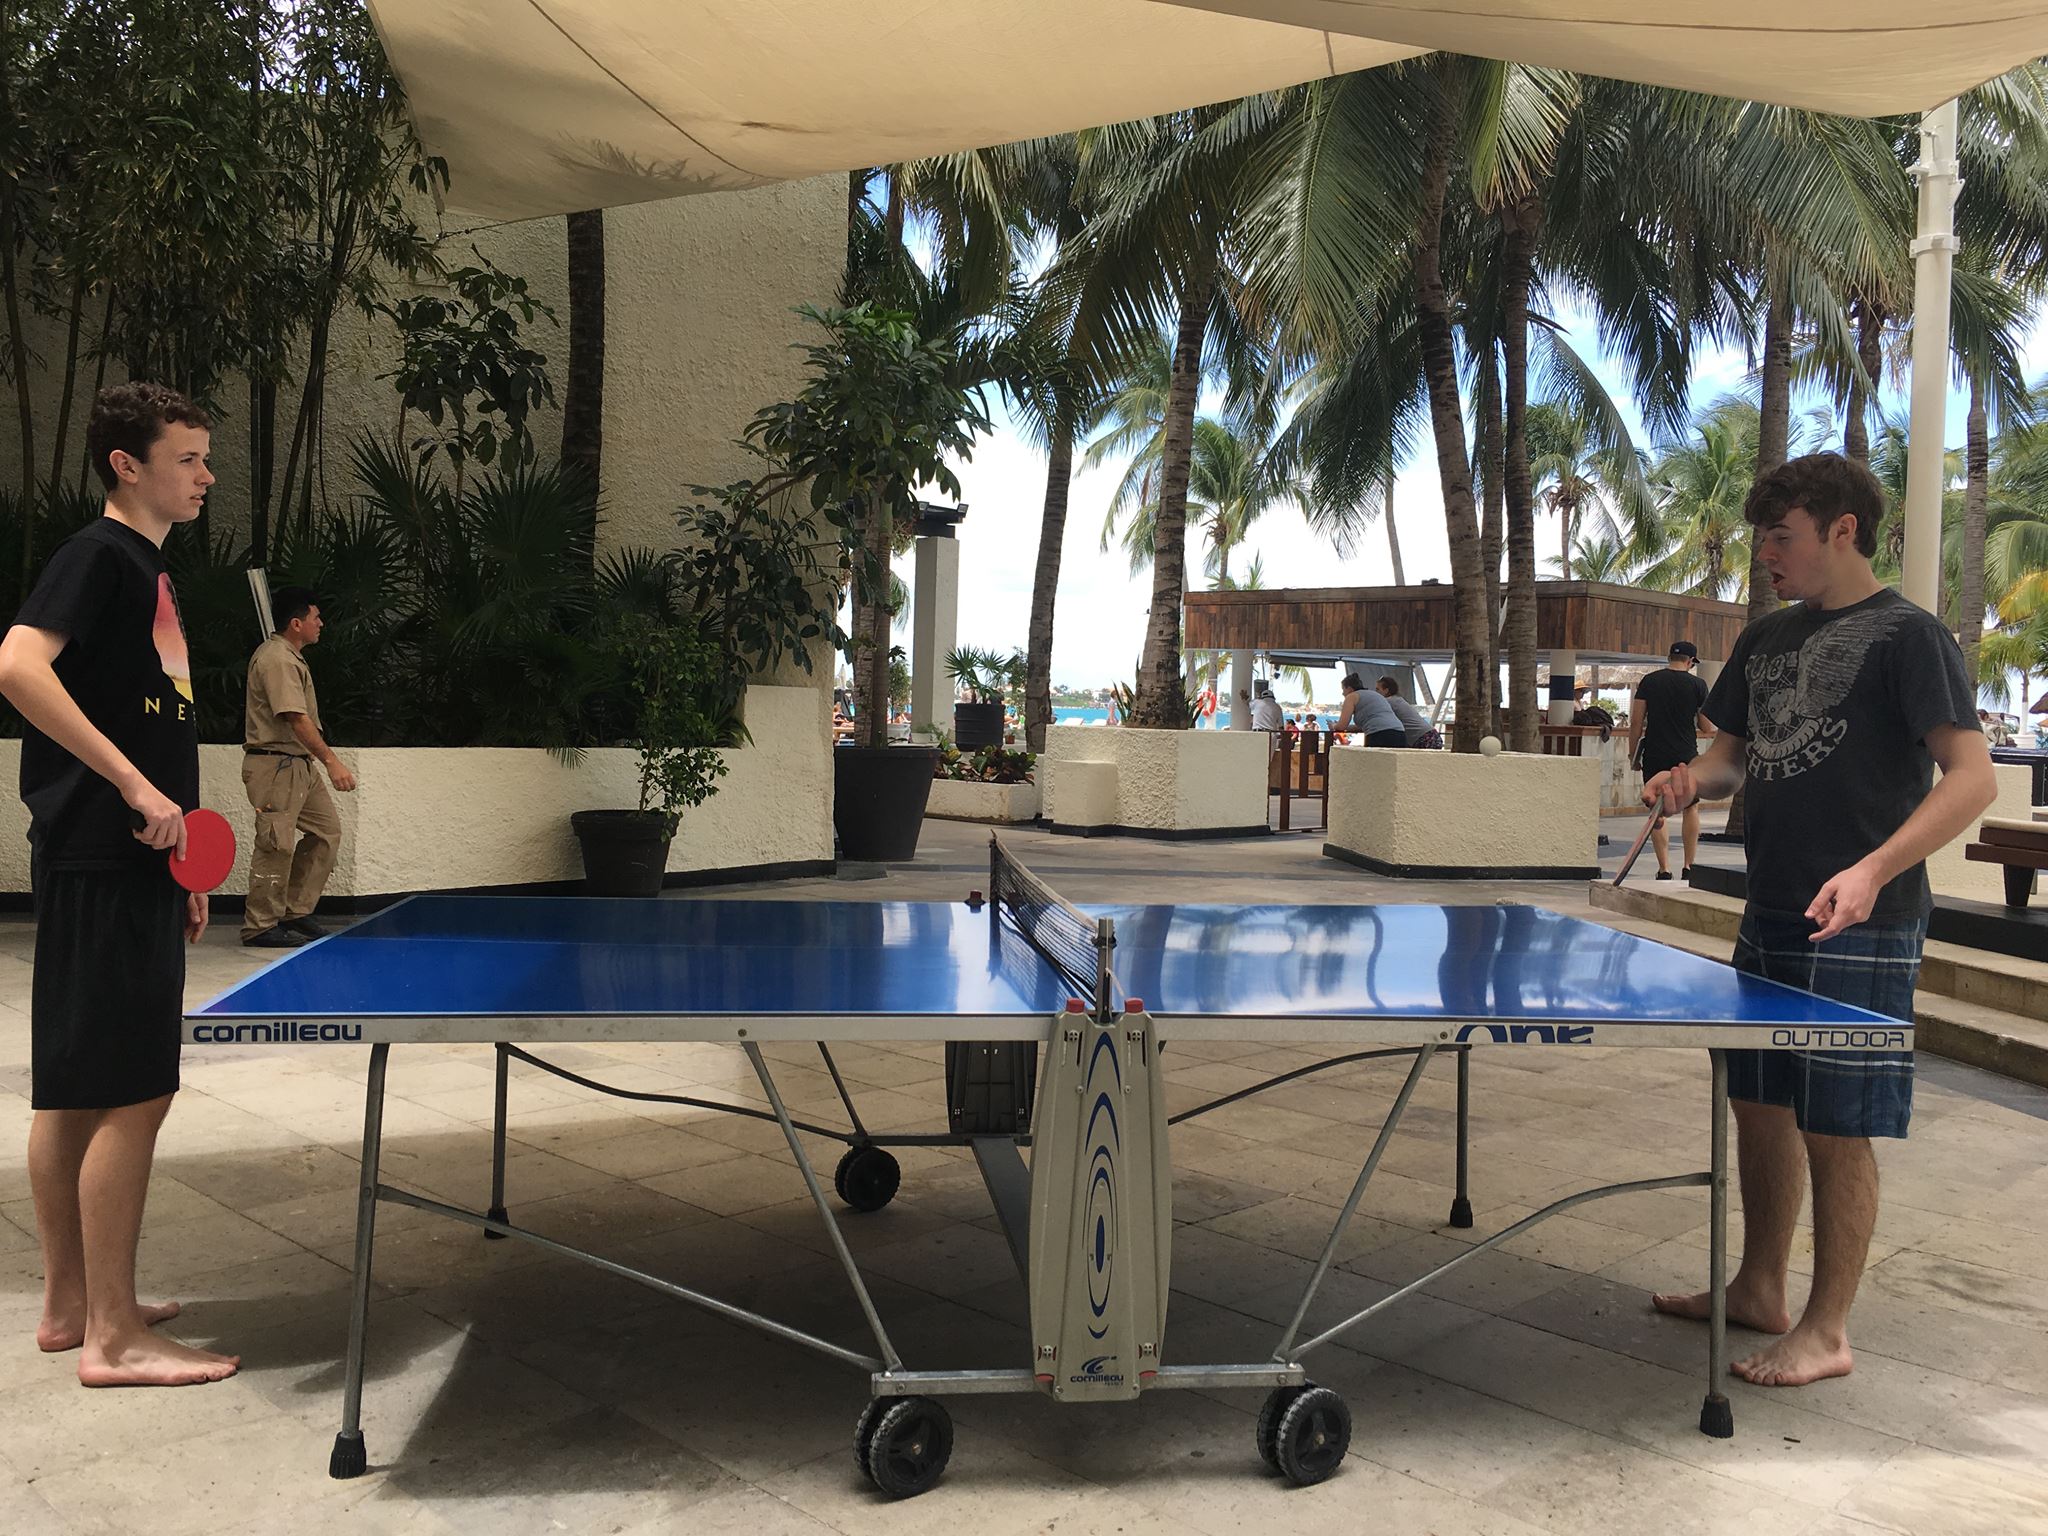 Boys playing ping pong at cancun mexico resort